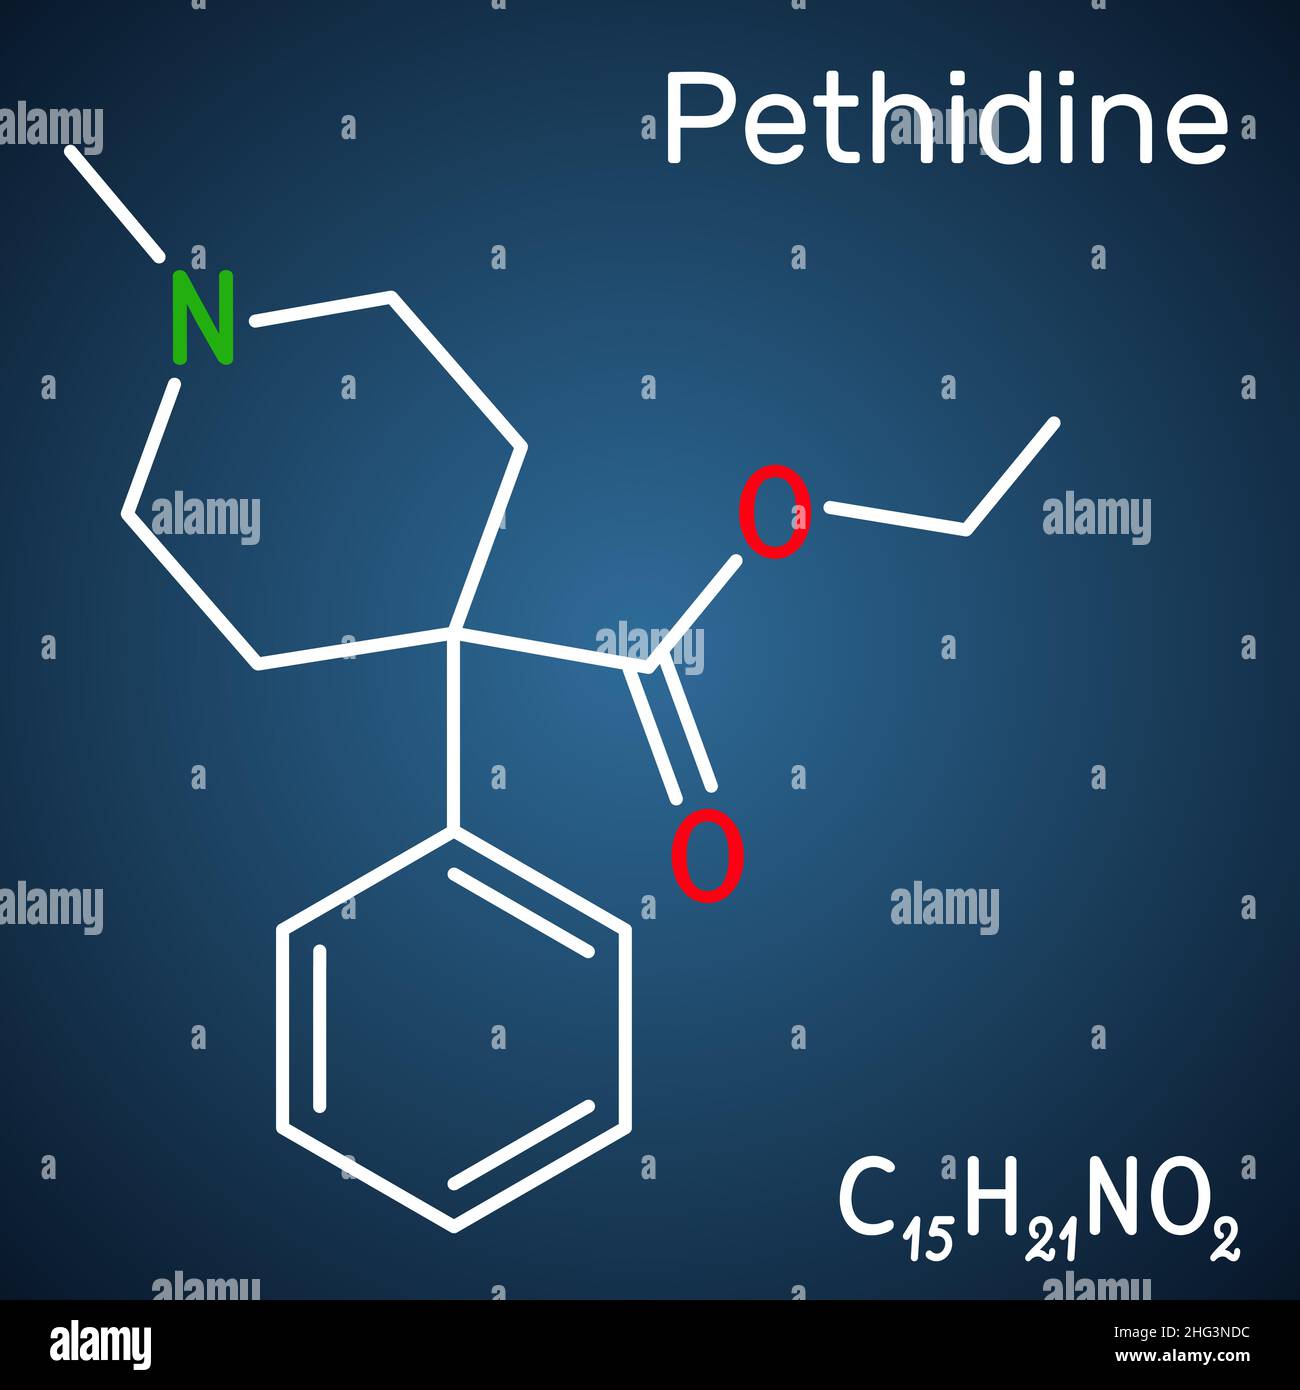 Pethidin, Meperidin-Molekül. Es handelt sich um einen Opioidagonisten mit analgetischen und sedativen Eigenschaften, der zur Behandlung von mittelschweren bis schweren Schmerzen eingesetzt wird. Strukturchemikalie Stock Vektor